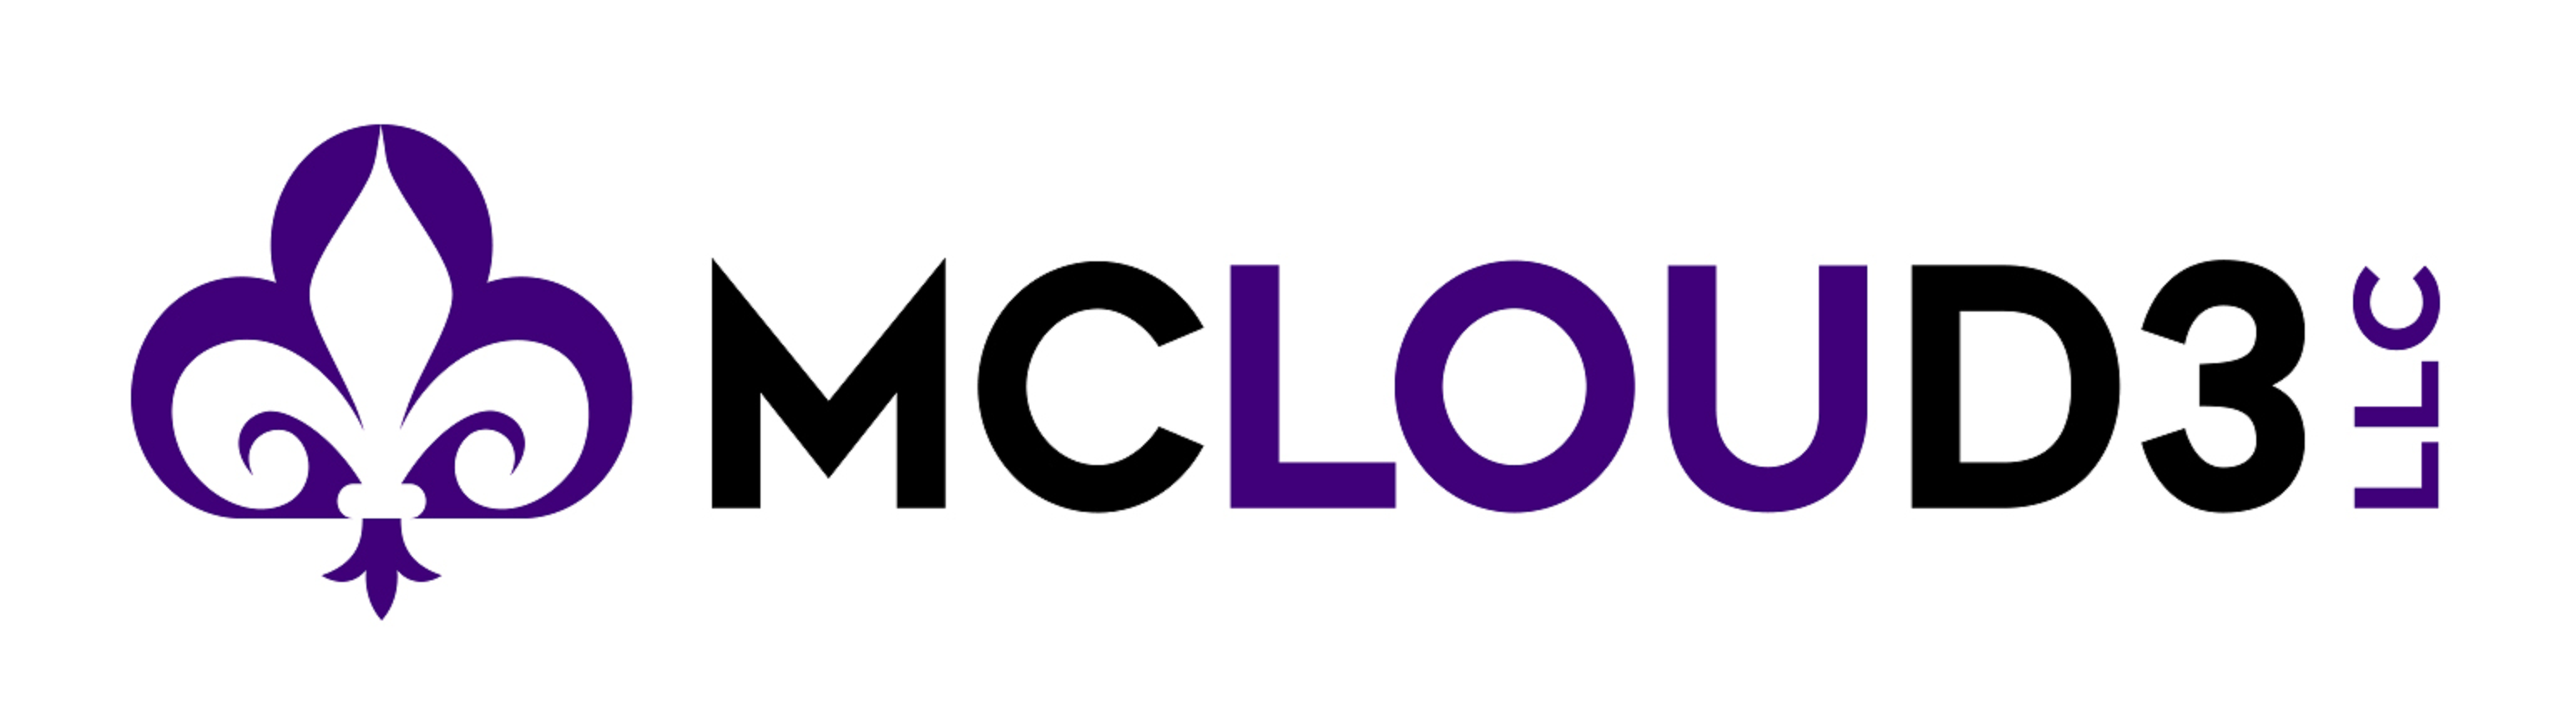 MCLOUD3 LLC